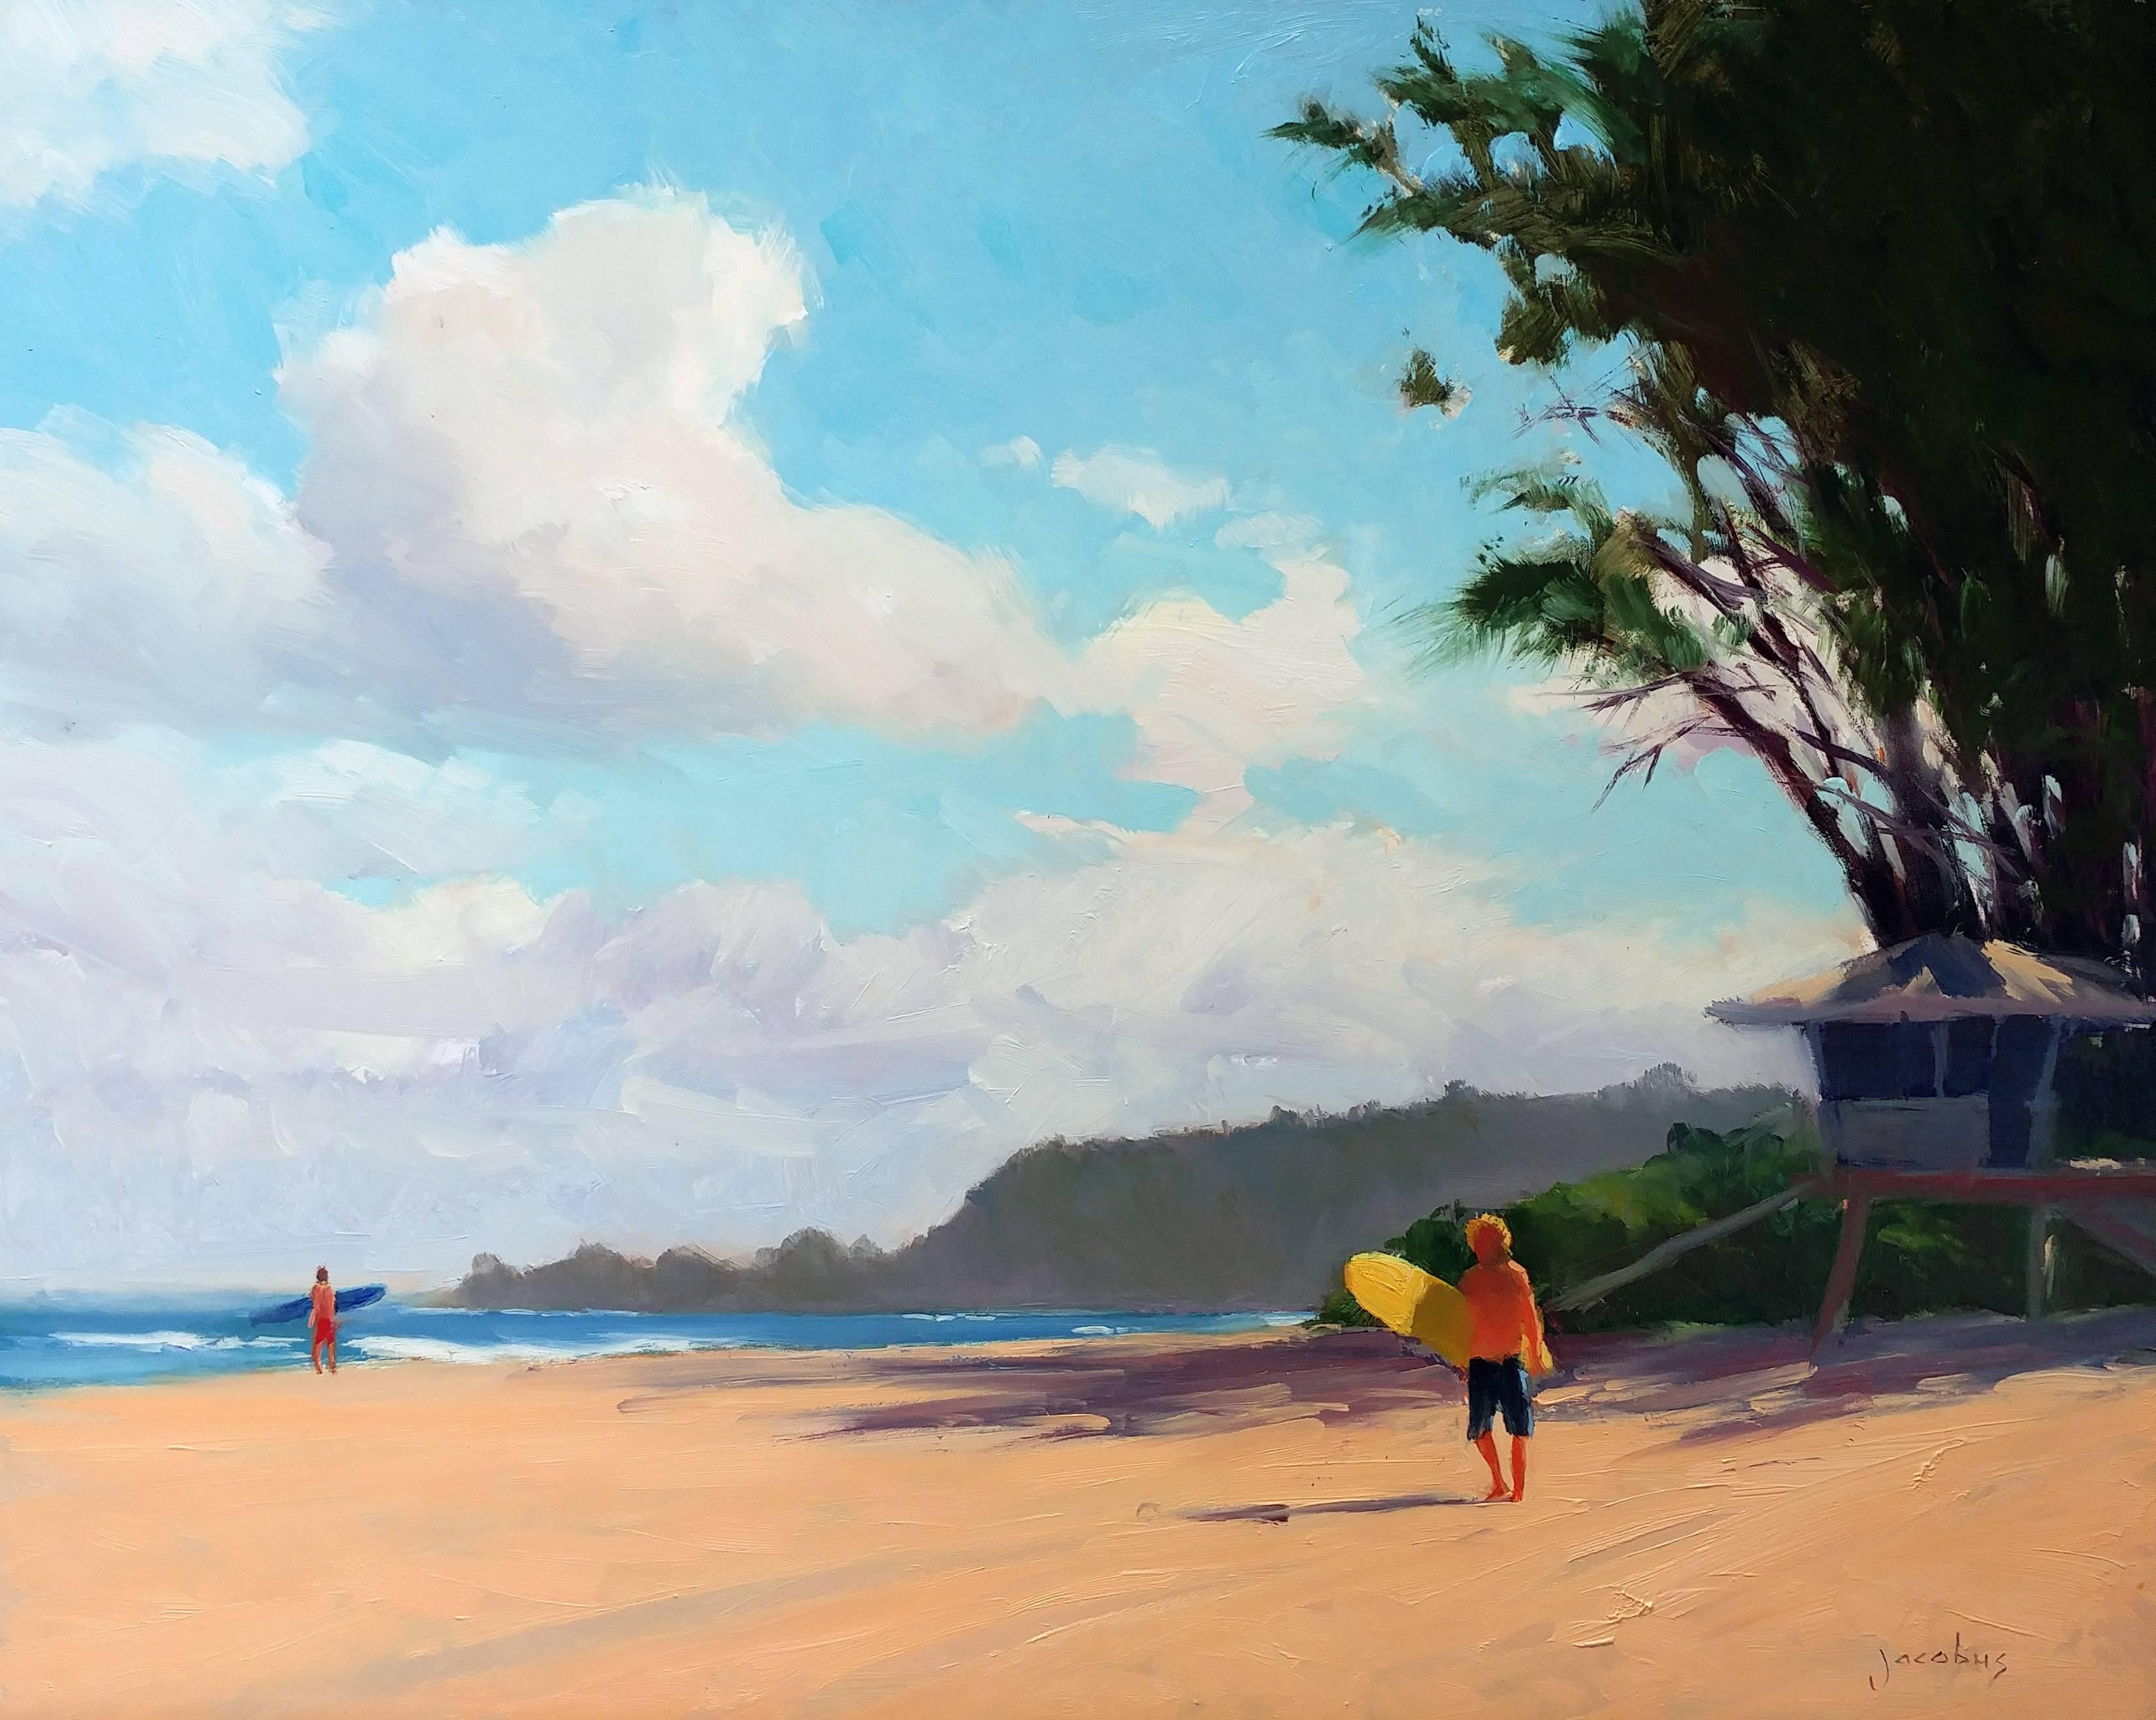 Jacobus Baas Landscape Painting - "Surfer At Chun's Beach" North Shore Hawaii Plein Air Oil 